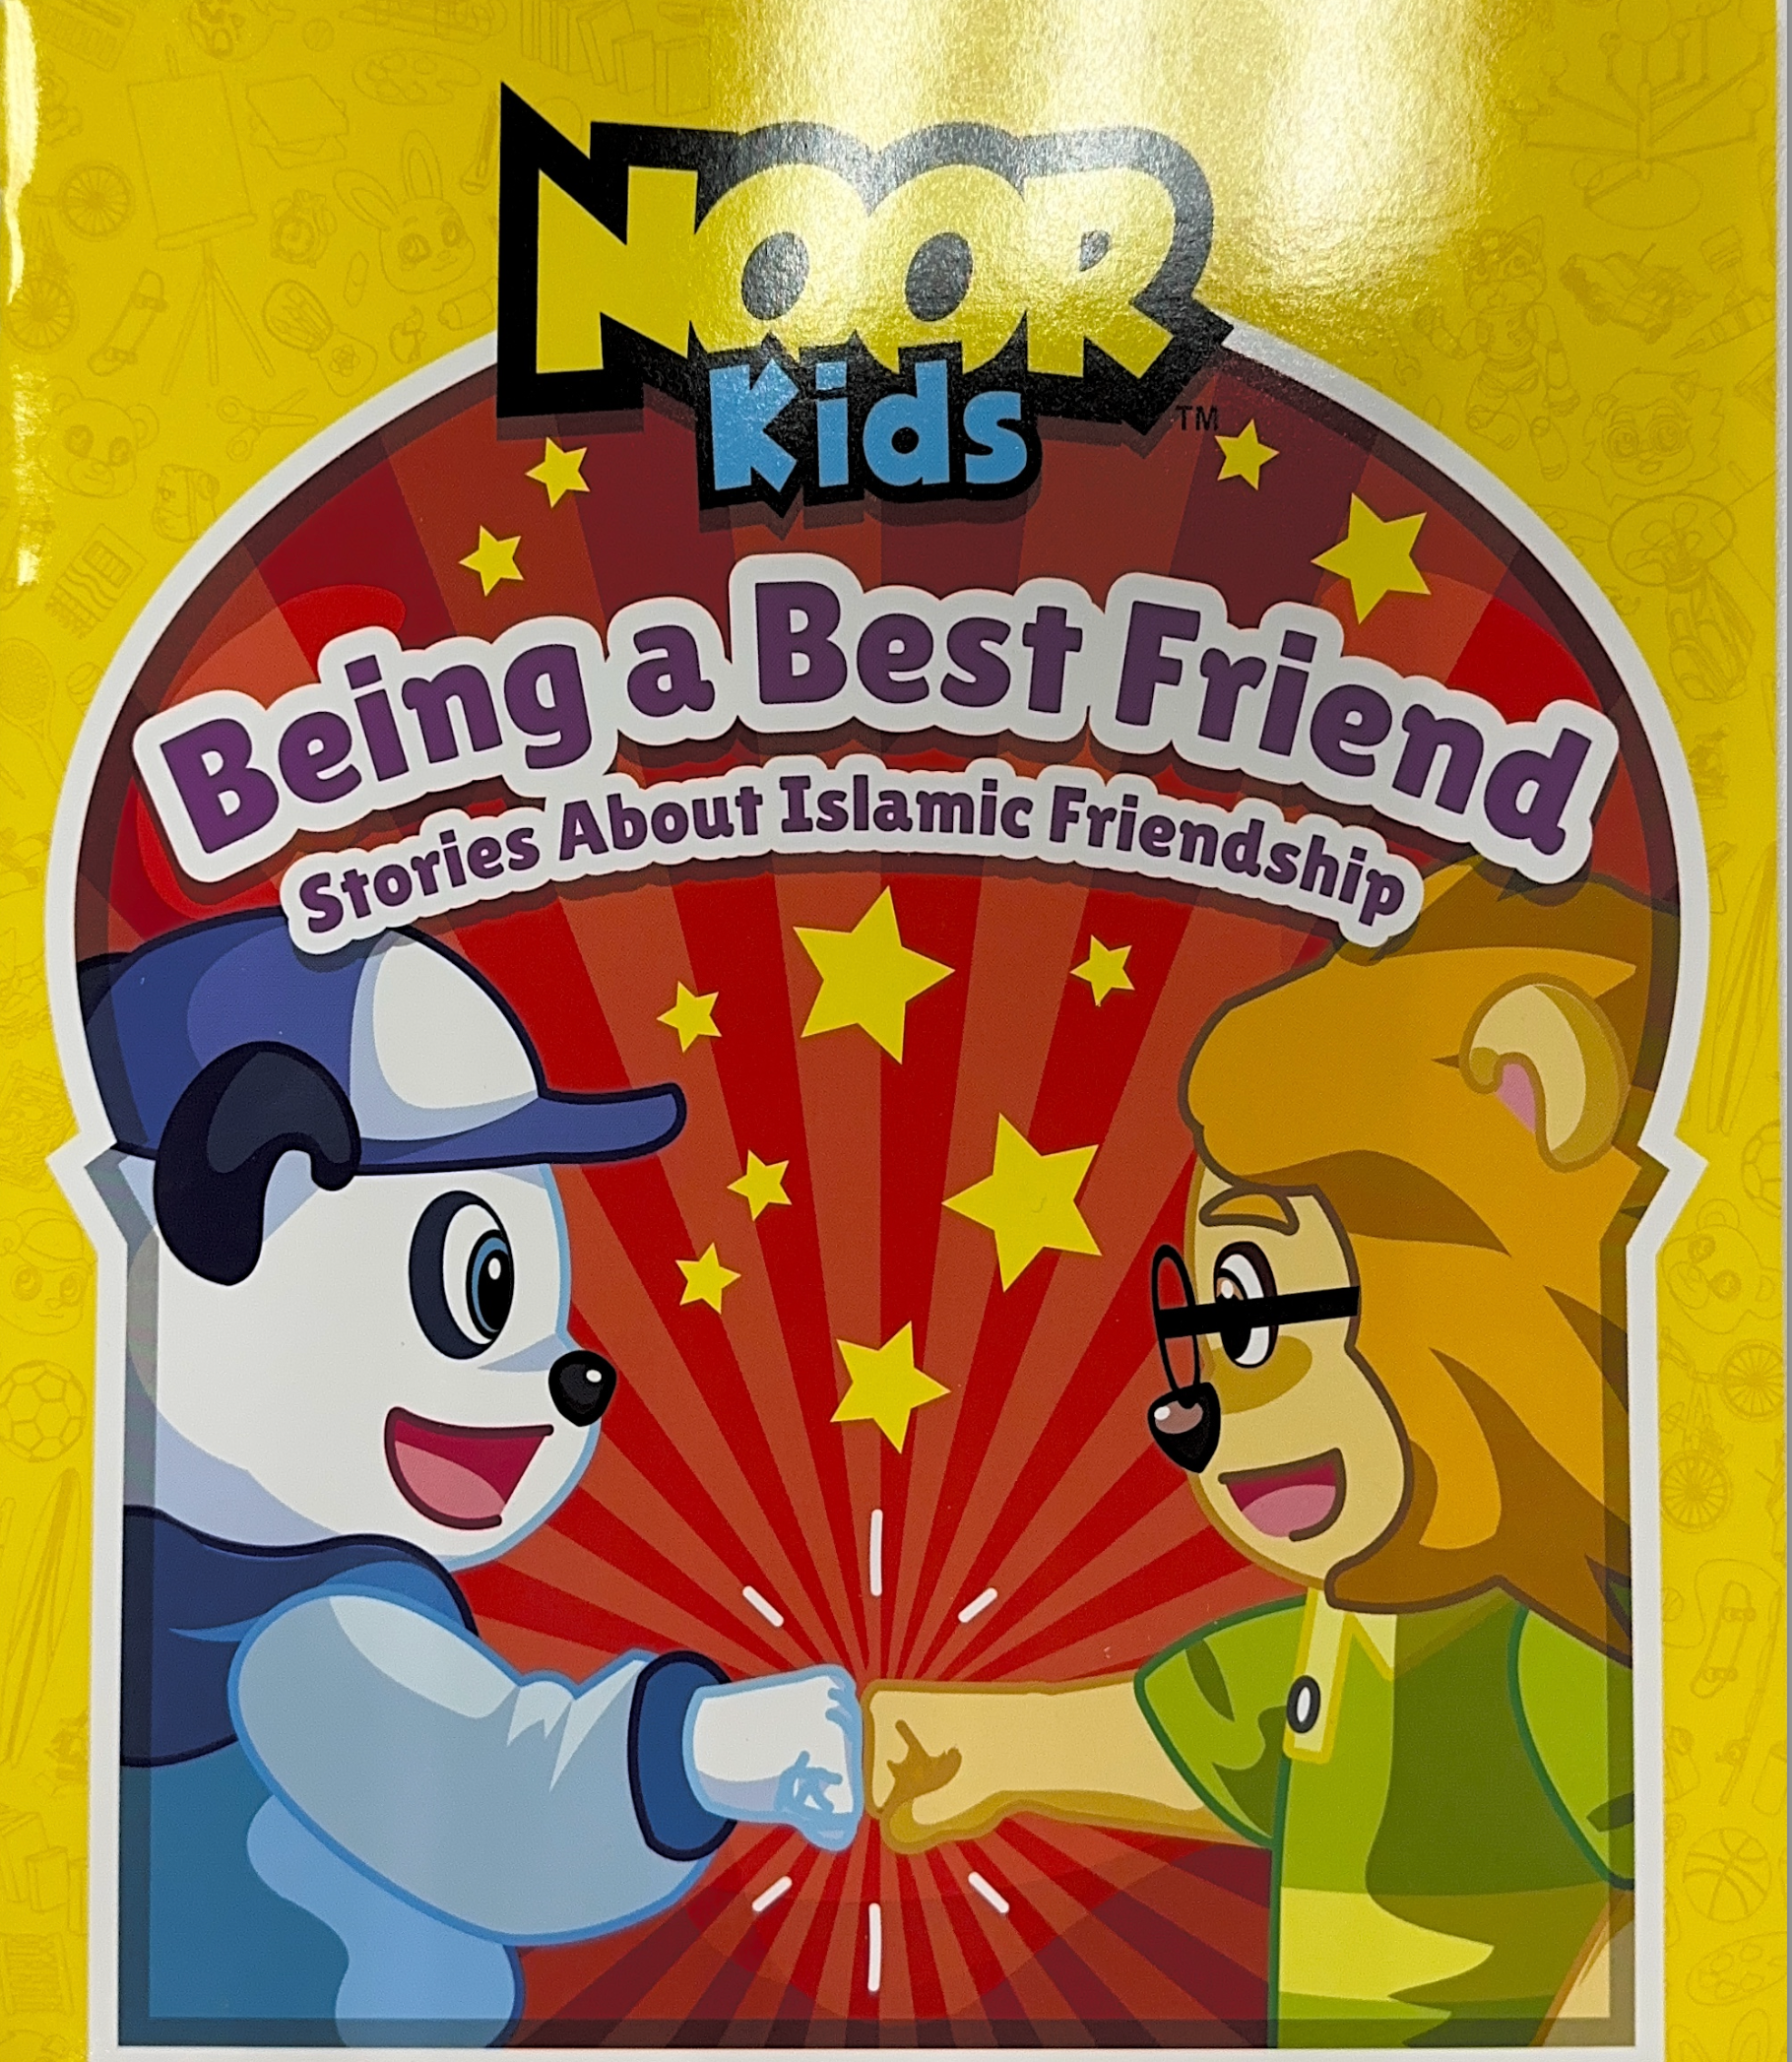 Noor Kids: Being a Best Friend, Stories About Islamic Friendship